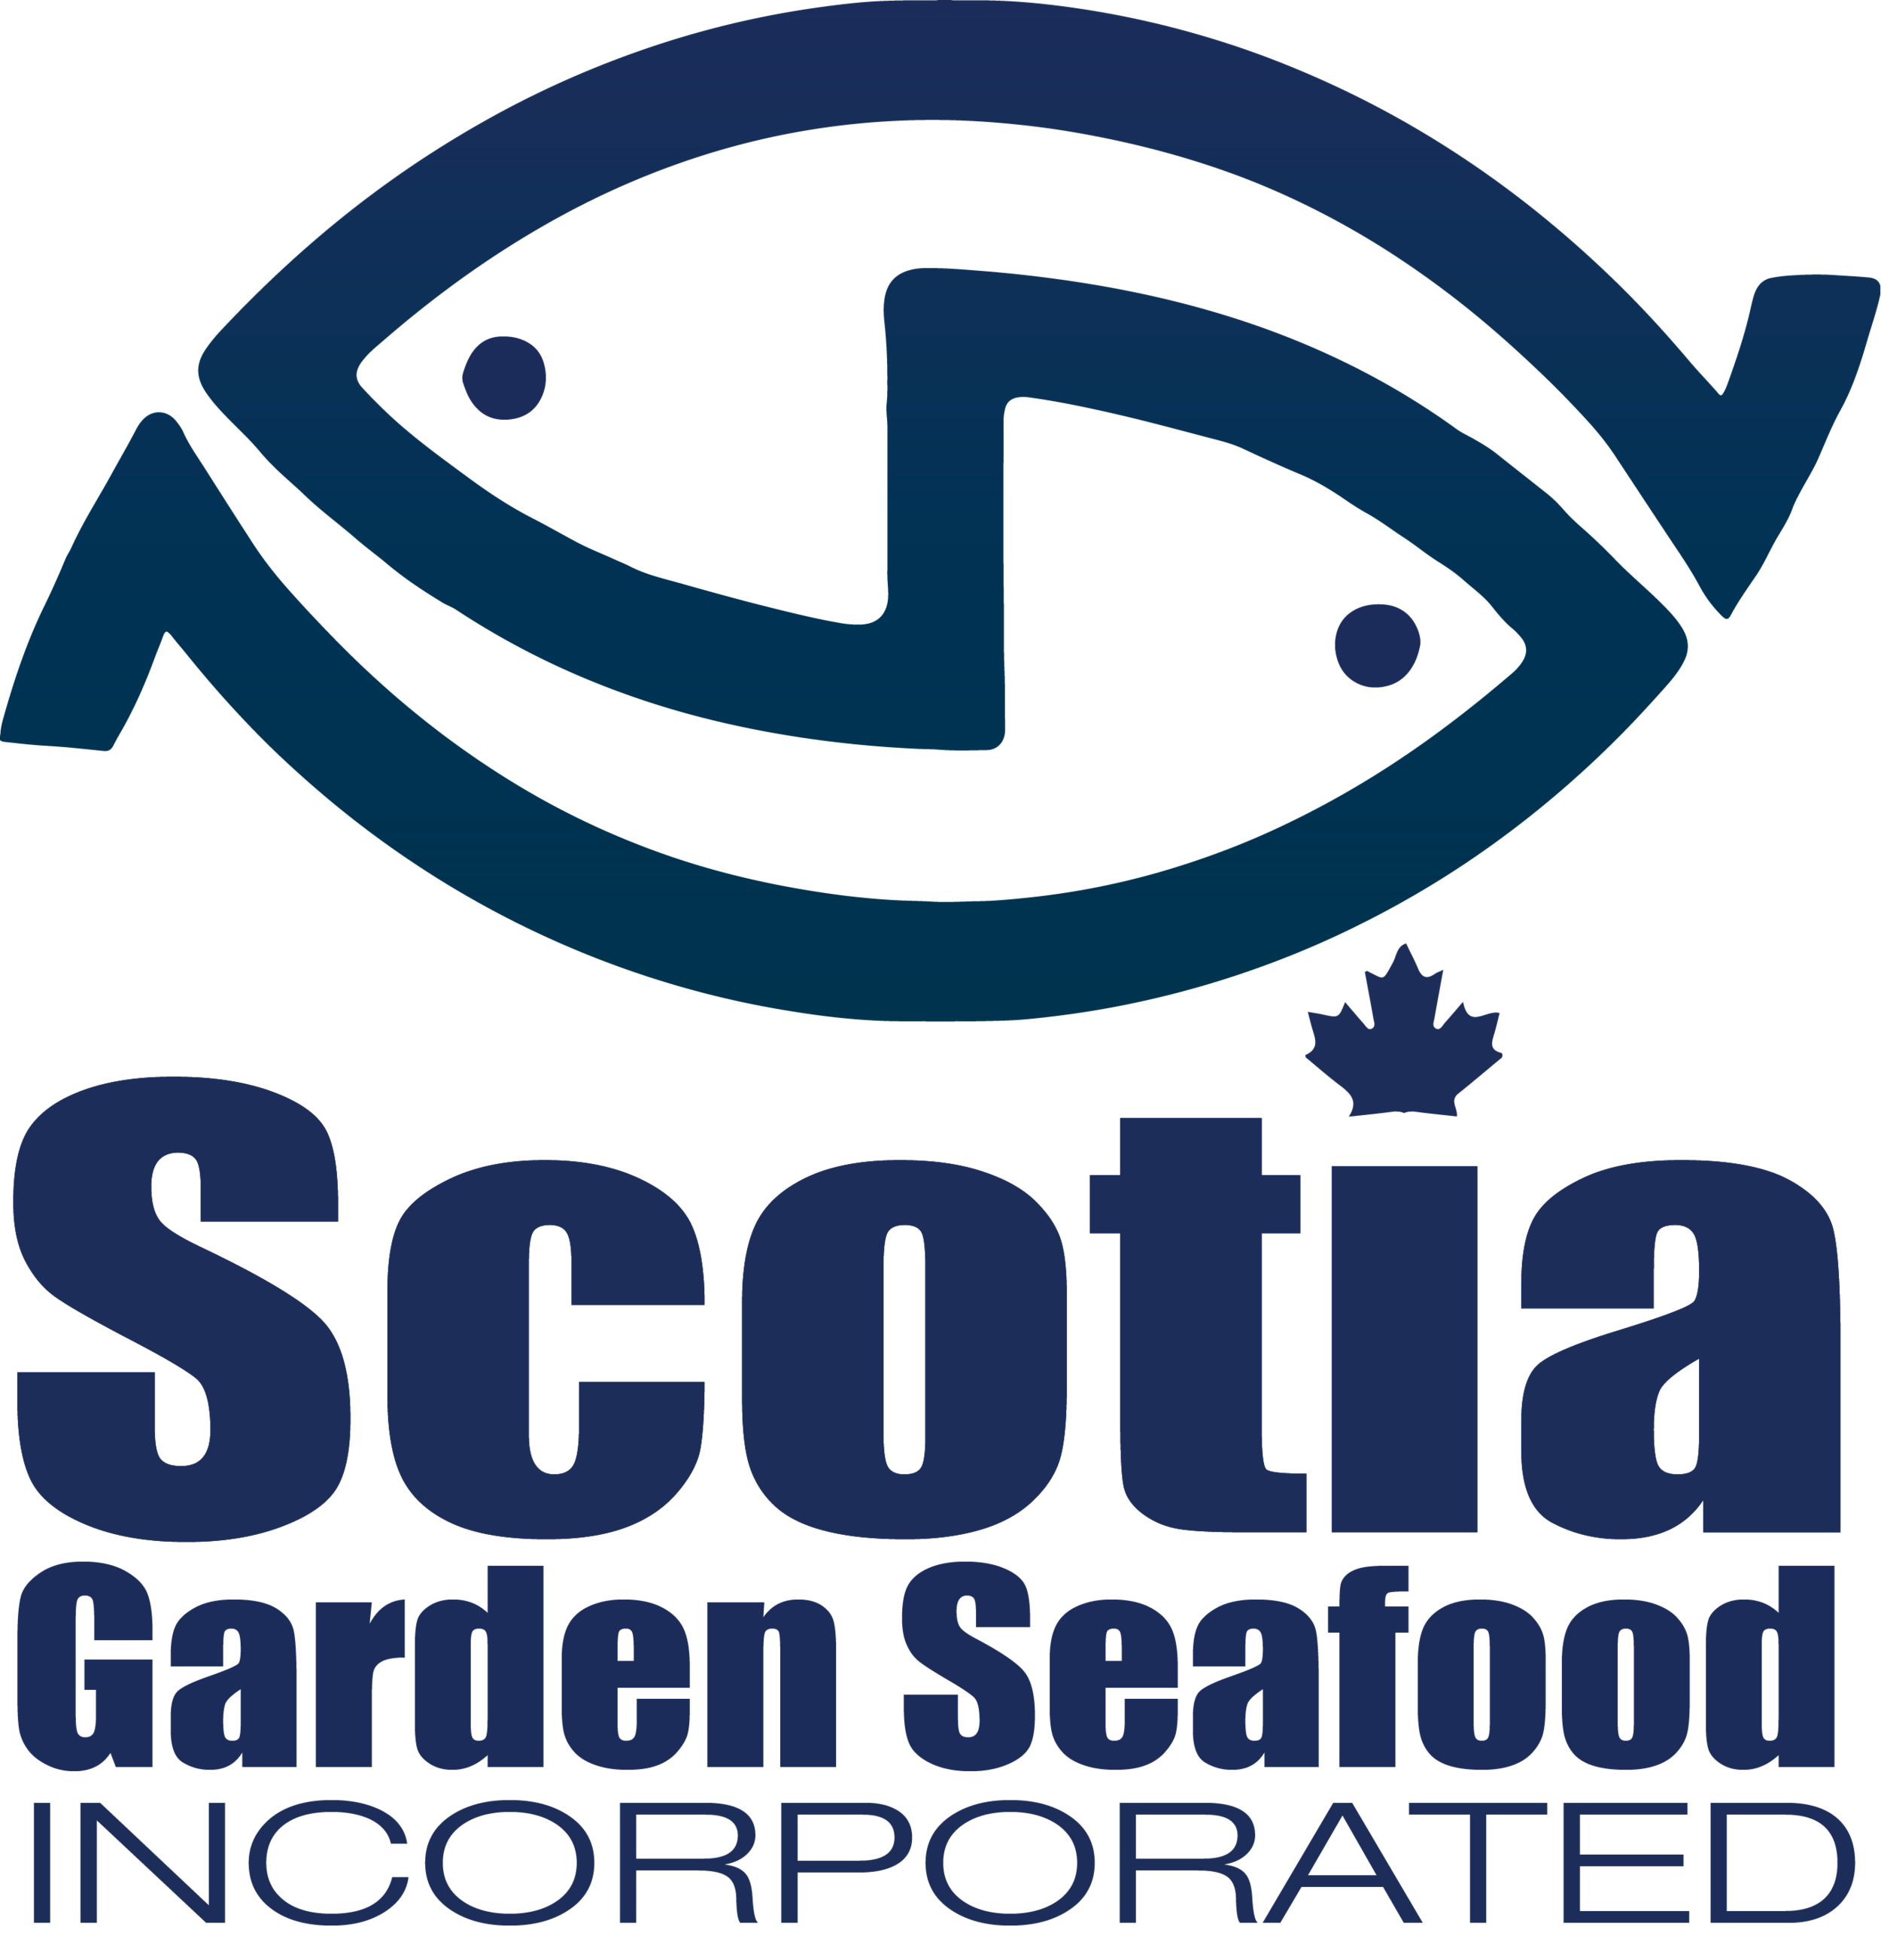 Scotia Garden Seafood | Seafood Wholesaler